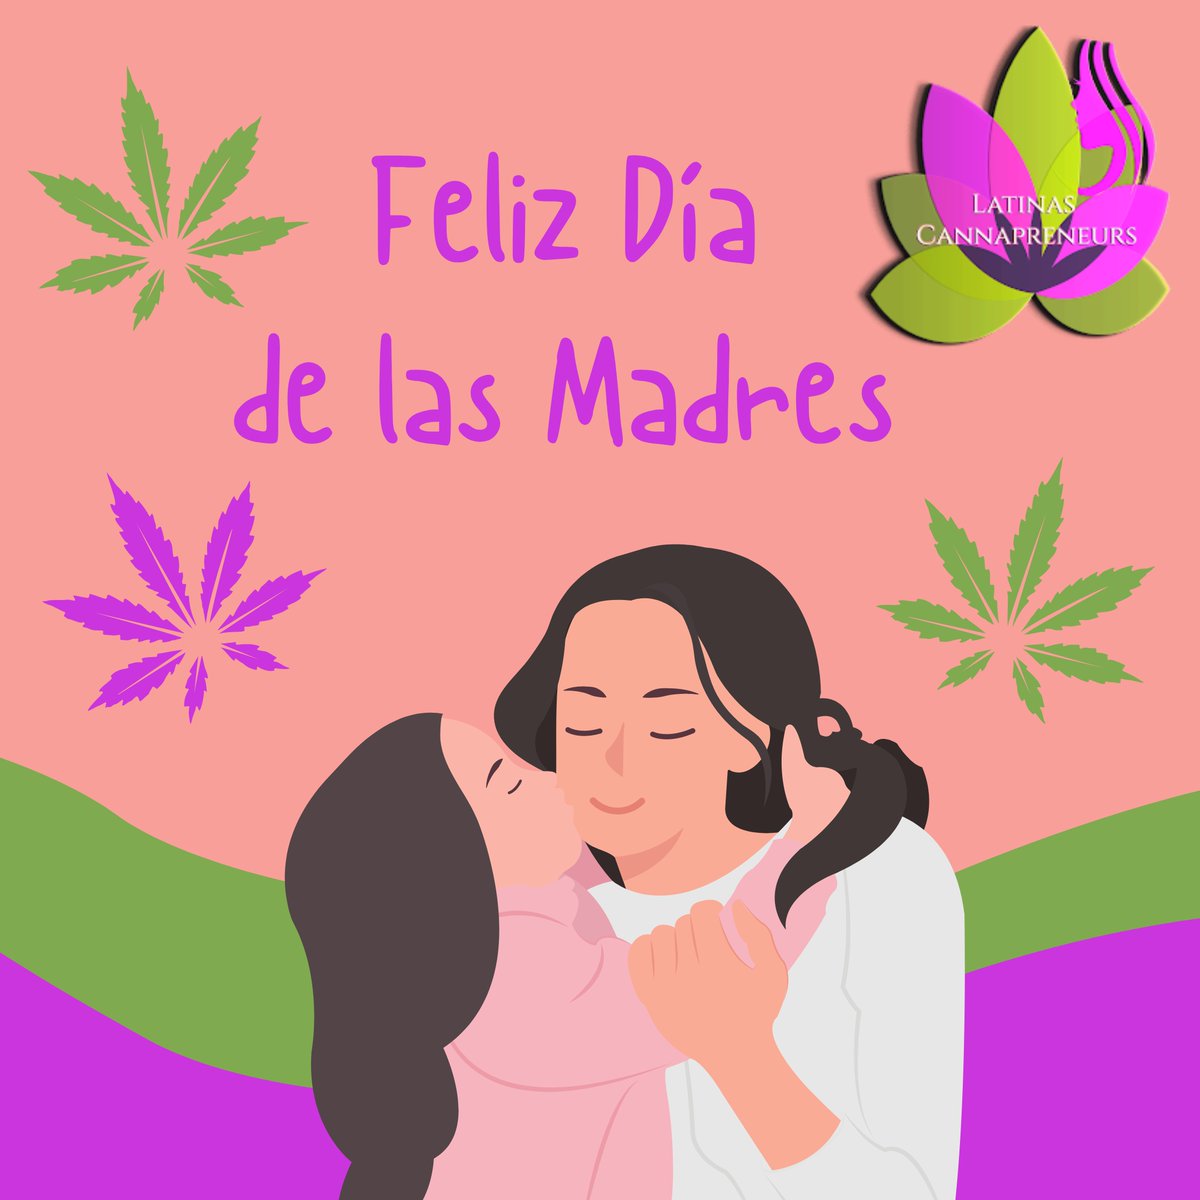 Feliz Día de las Madres a todas las mamás emprendedoras en la industria del cannabis. ¡Gracias por liderar con valentía y dedicación! 💚🌸 

#InspiraEducaEleva #LatinasCannapreneurs
#DíaDeLasMadres #CannabisEmprendedoras #Emprendimiento #AmorMaternal #Mothersday